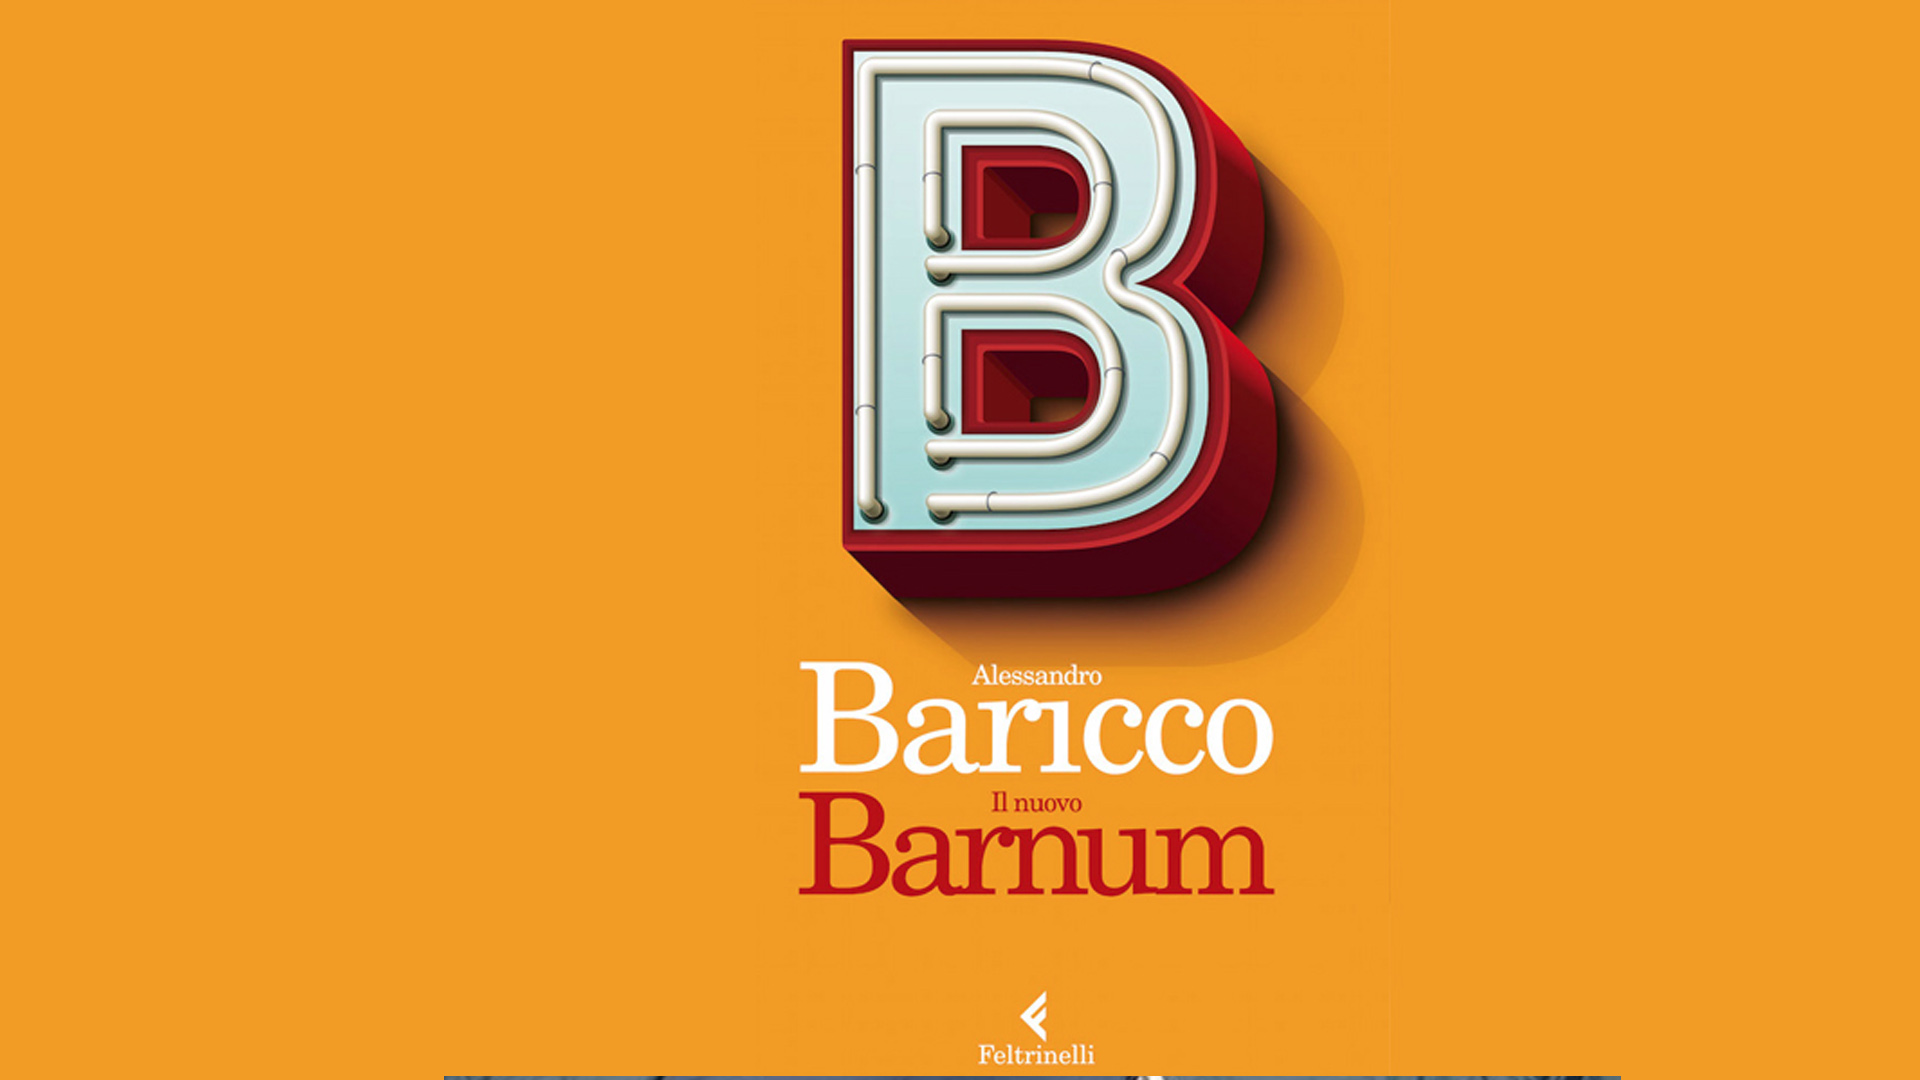 E' uscito nelle librerie, il 29 Settembre 2016, Il nuovo Barnum, una raccolta di articoli e saggi dello scrittore Alessandro Baricco